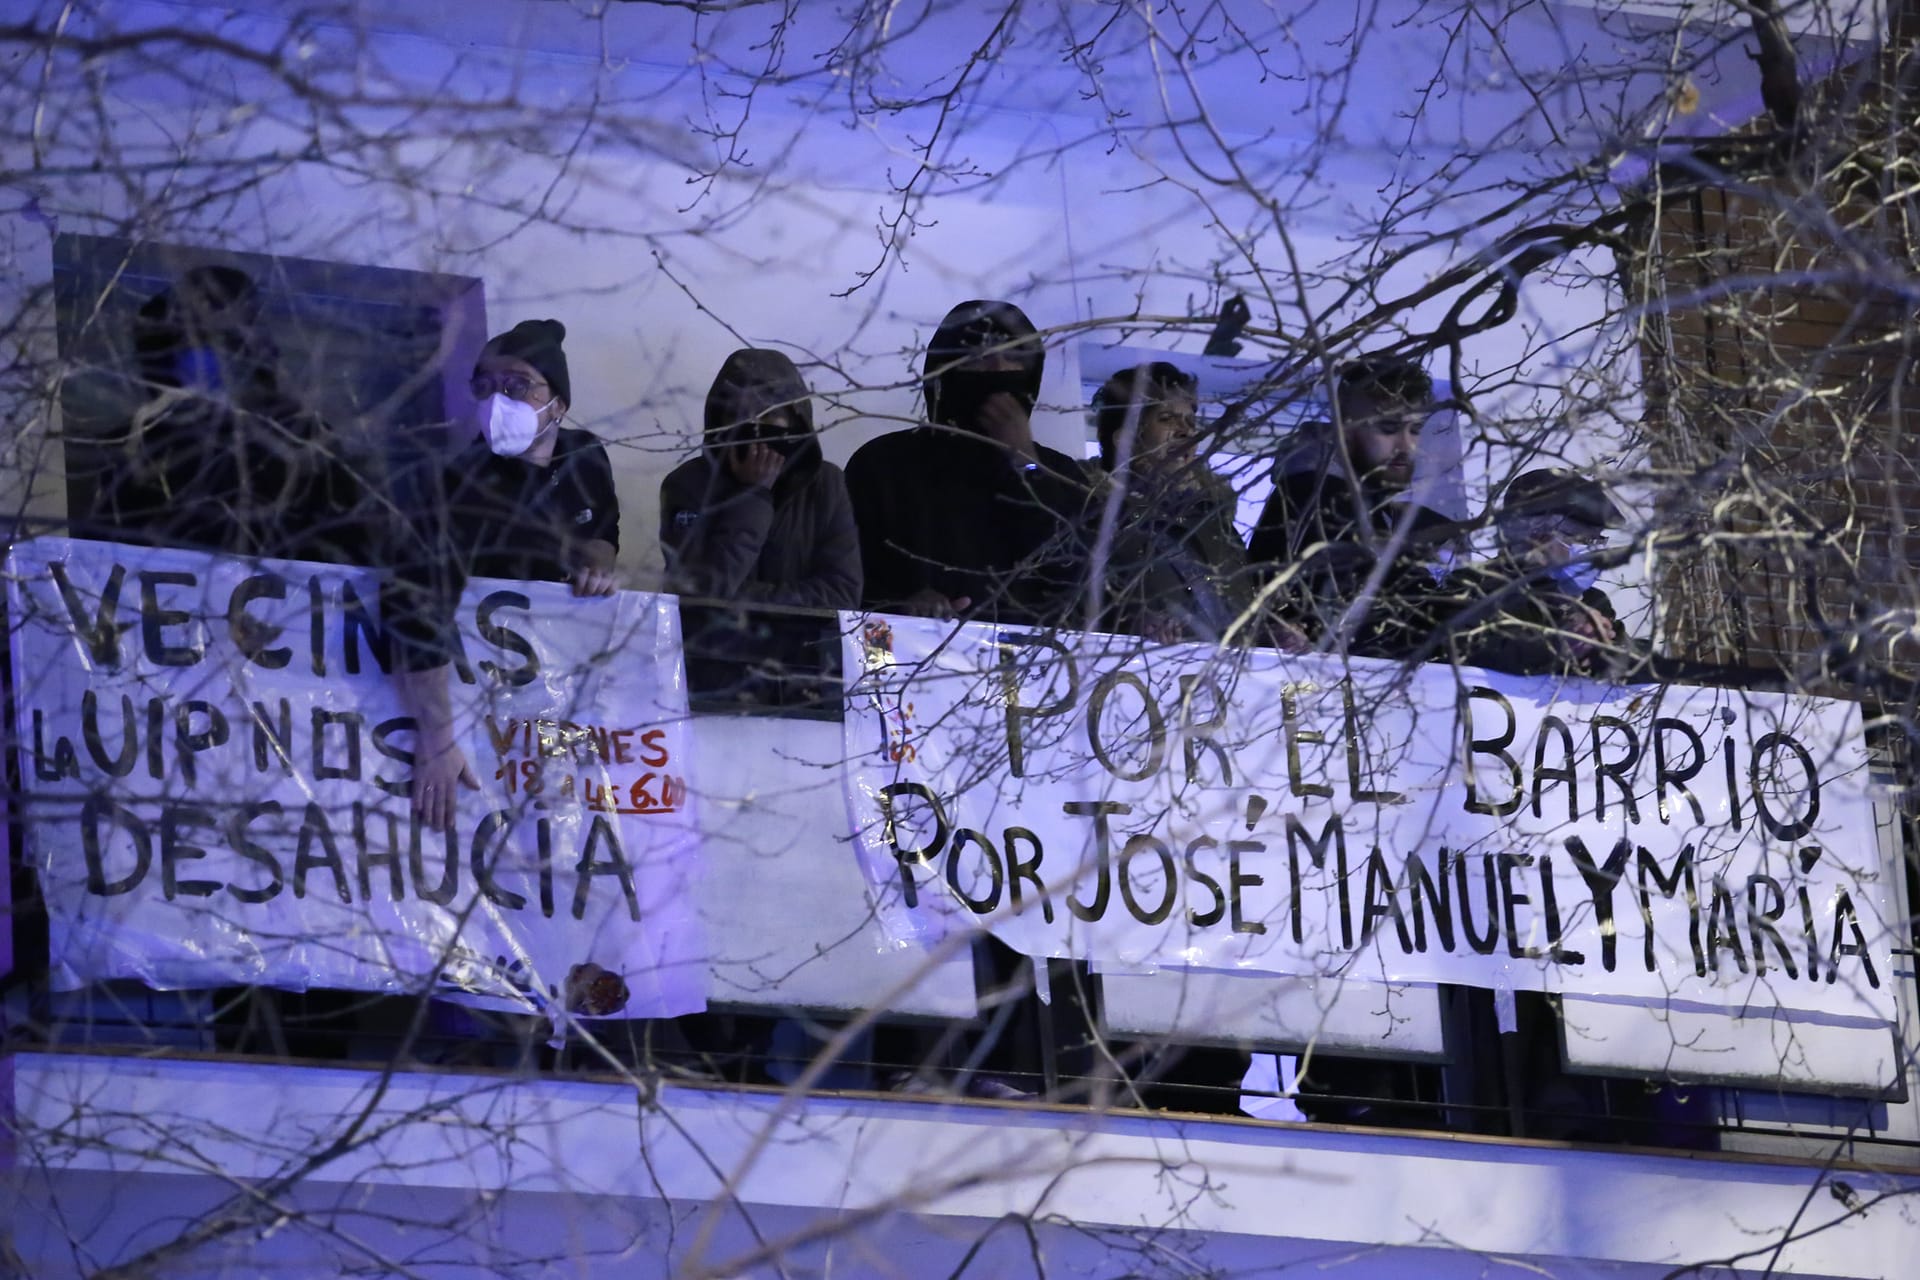 La UIP ejecuta el desahucio de Jose Manuel y maría, sin alternativa habitacional.